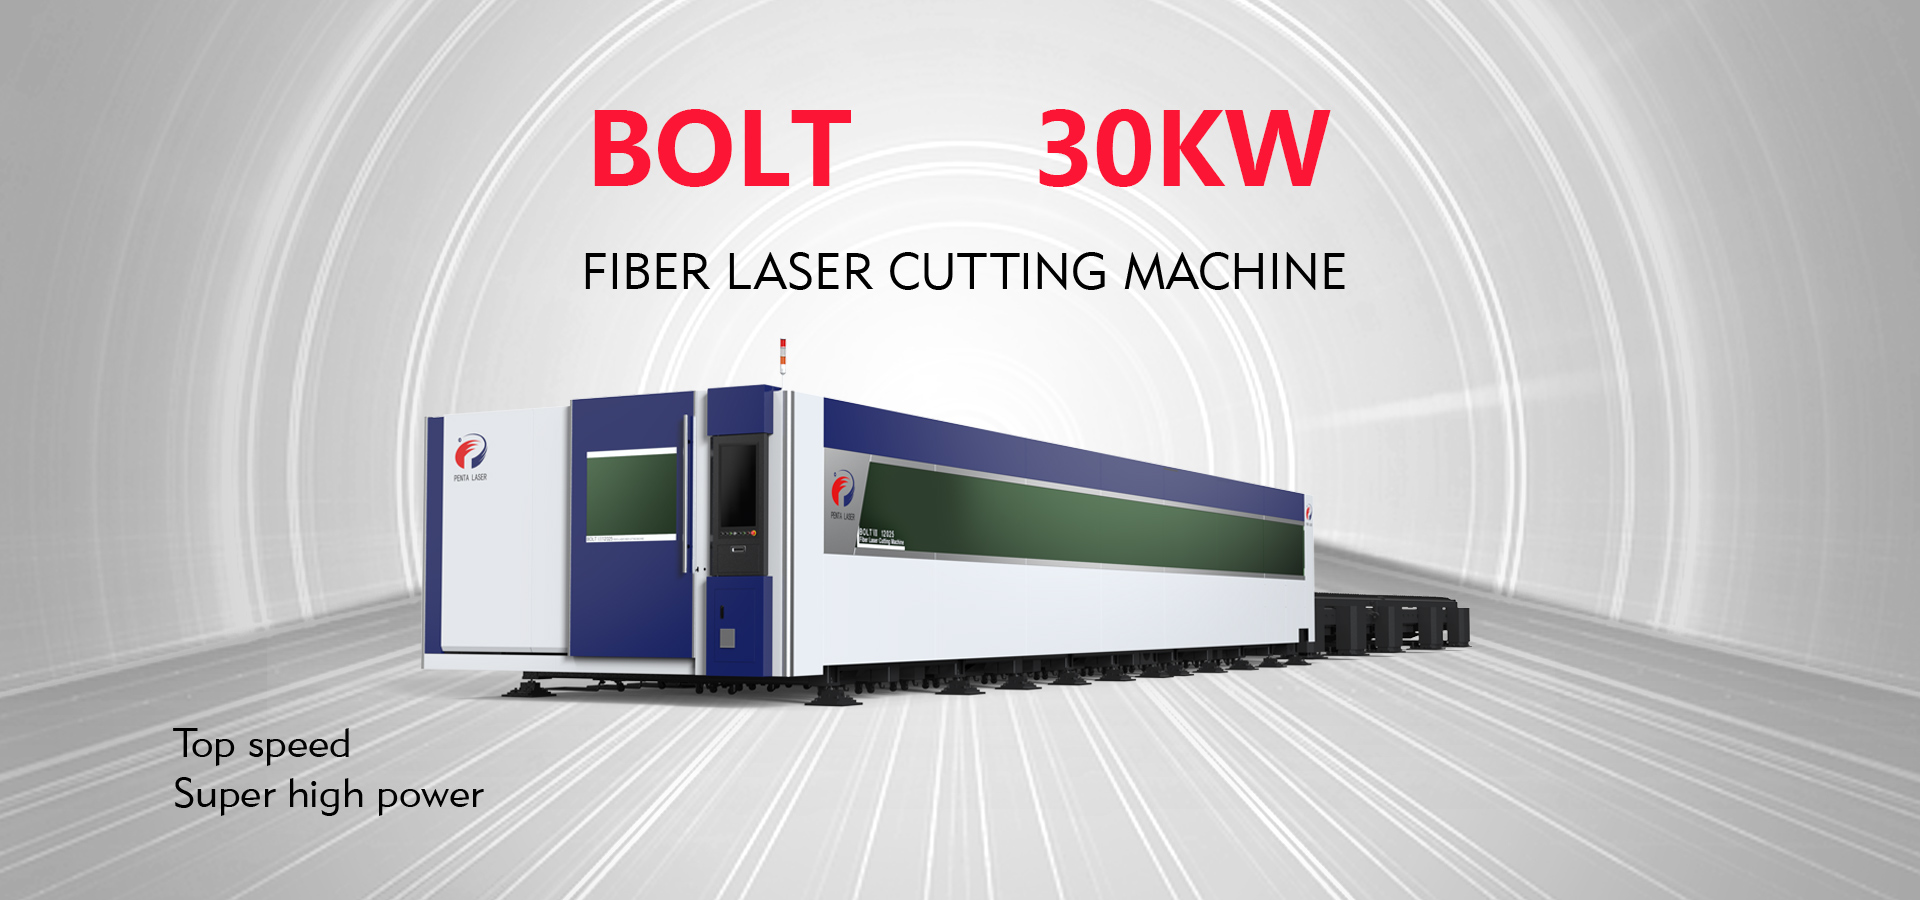 PENTA LASER 30KW Laser Cutting Machine World Debut